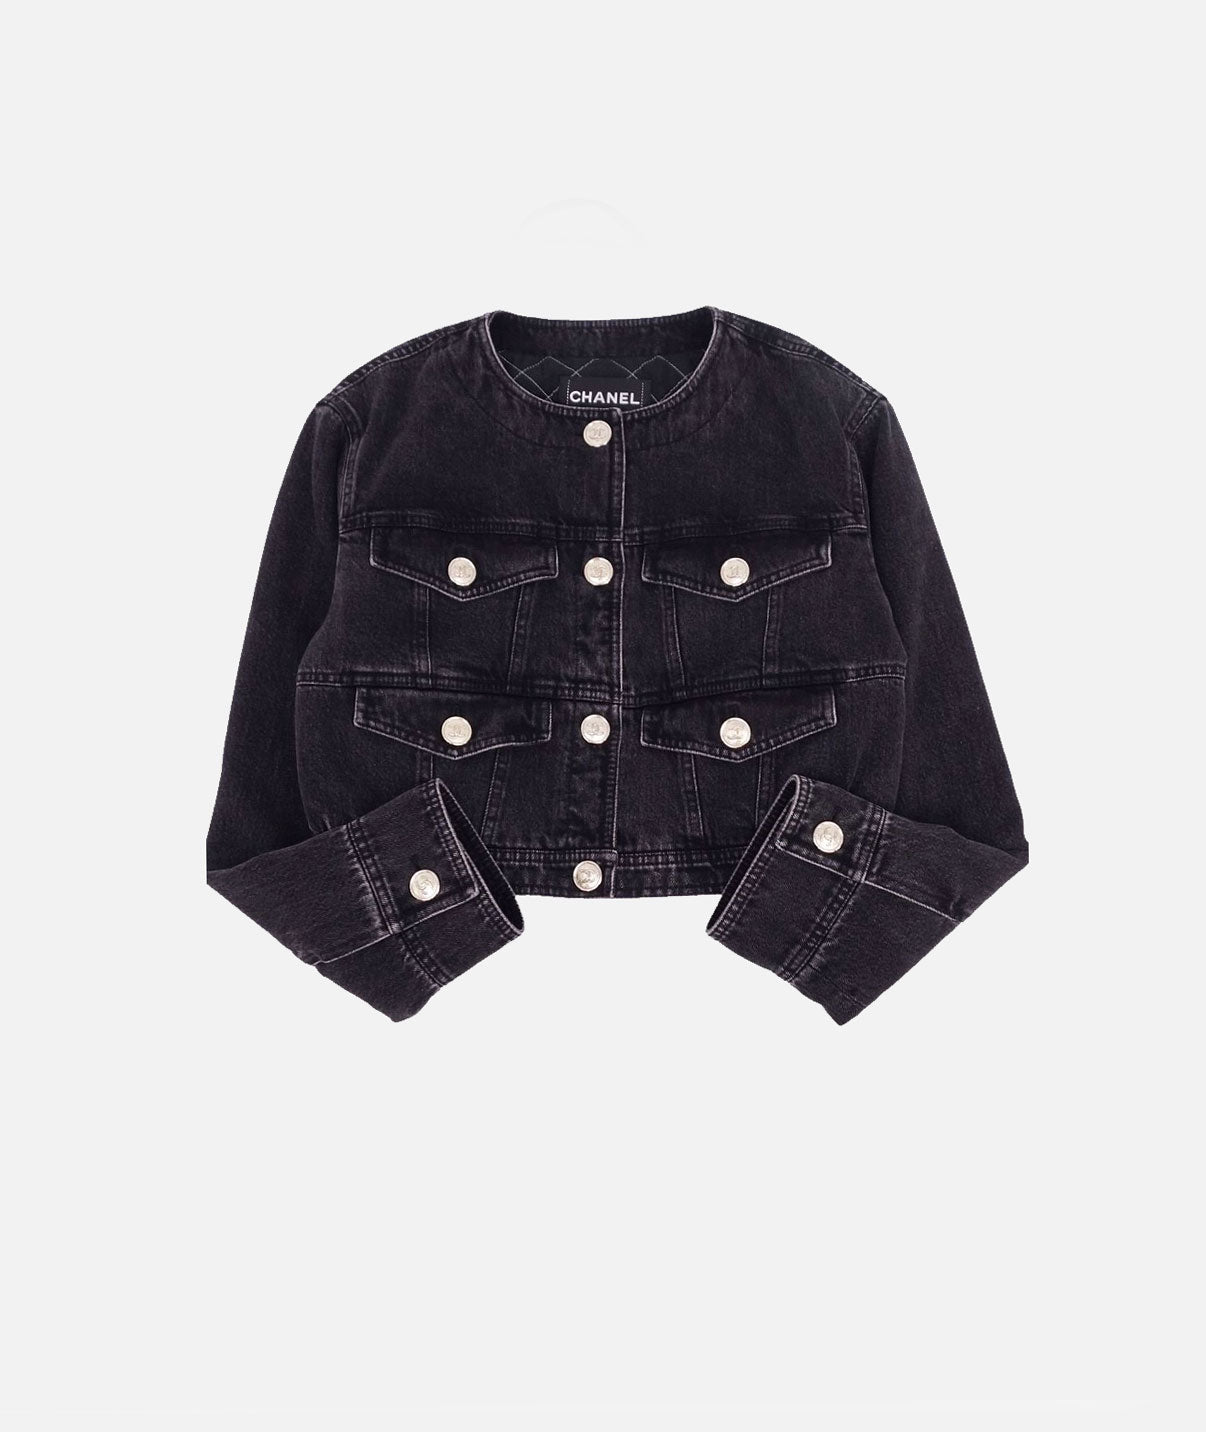 Chanel 2020 Black Denim Four Pocket Jacket · INTO